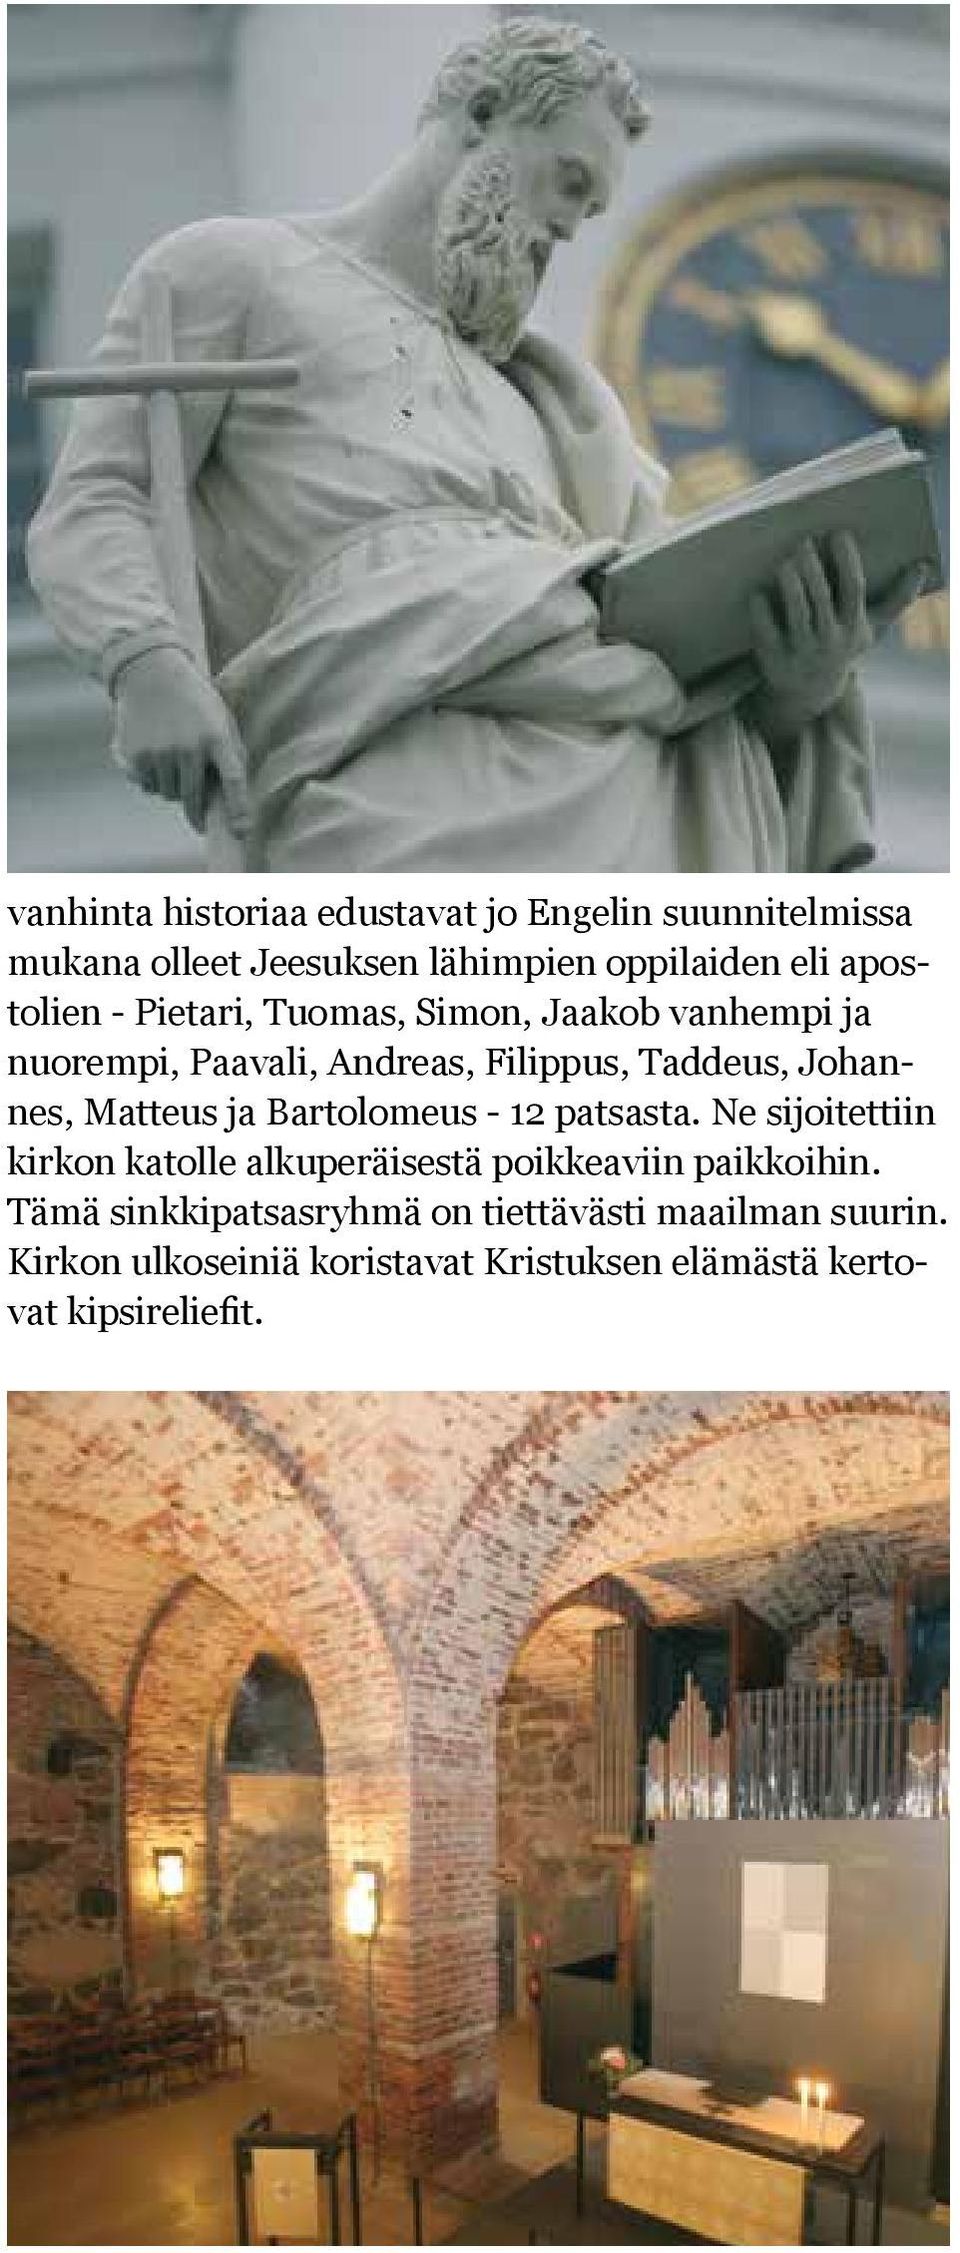 Matteus ja Bartolomeus - 12 patsasta. Ne sijoitettiin kirkon katolle alkuperäisestä poikkeaviin paikkoihin.